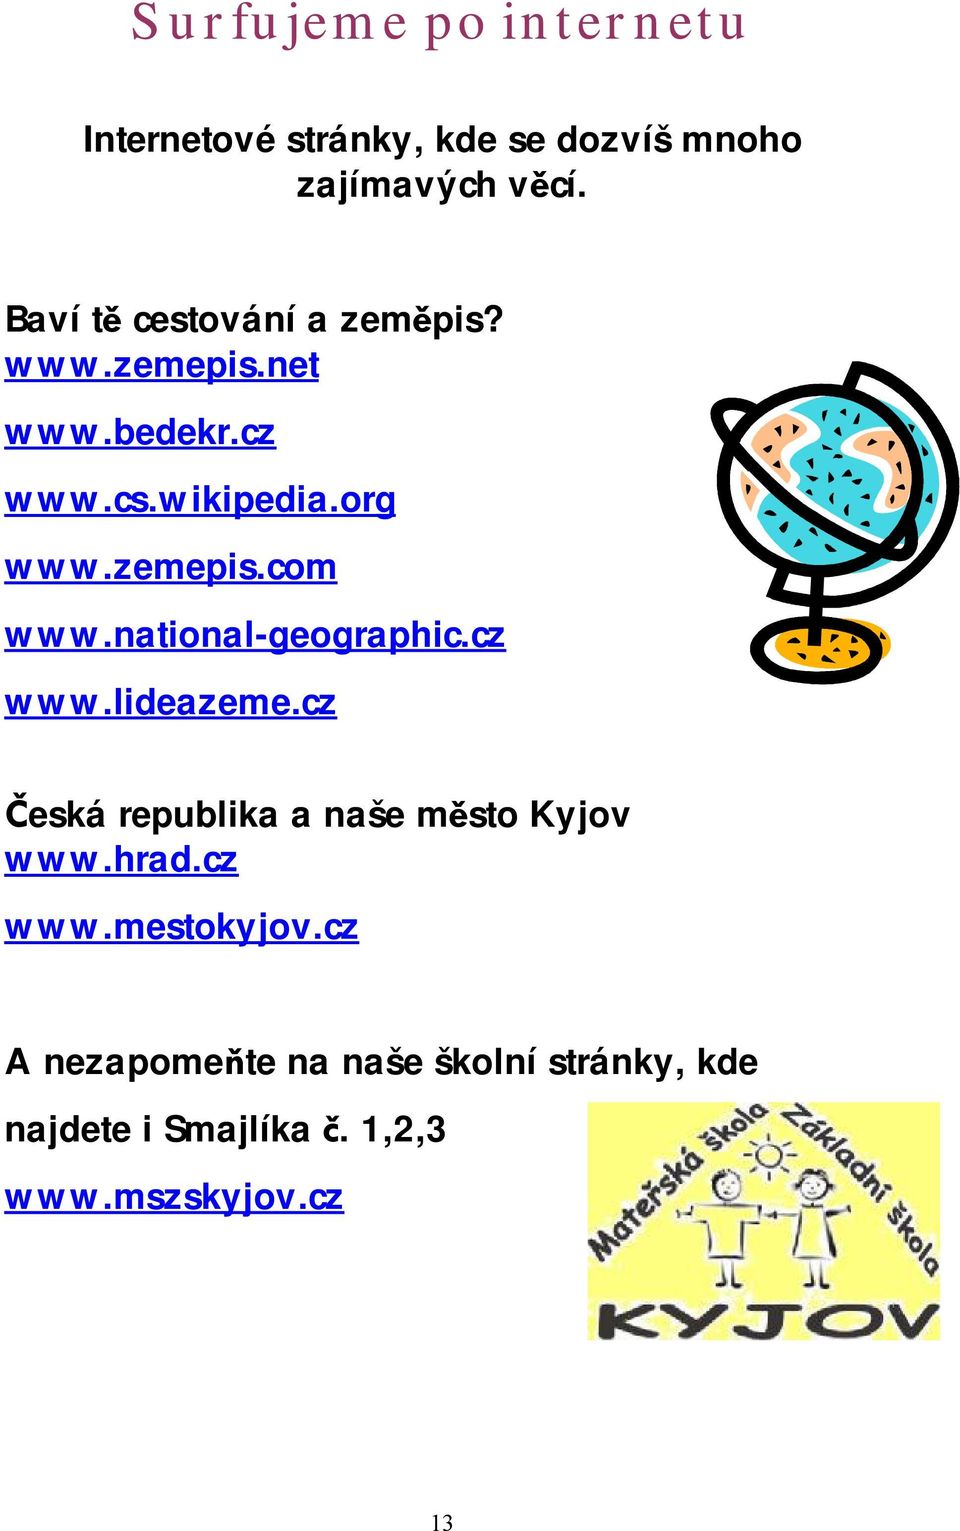 national-geographic.cz www.lideazeme.cz Česká republika a naše město Kyjov www.hrad.cz www.mestokyjov.